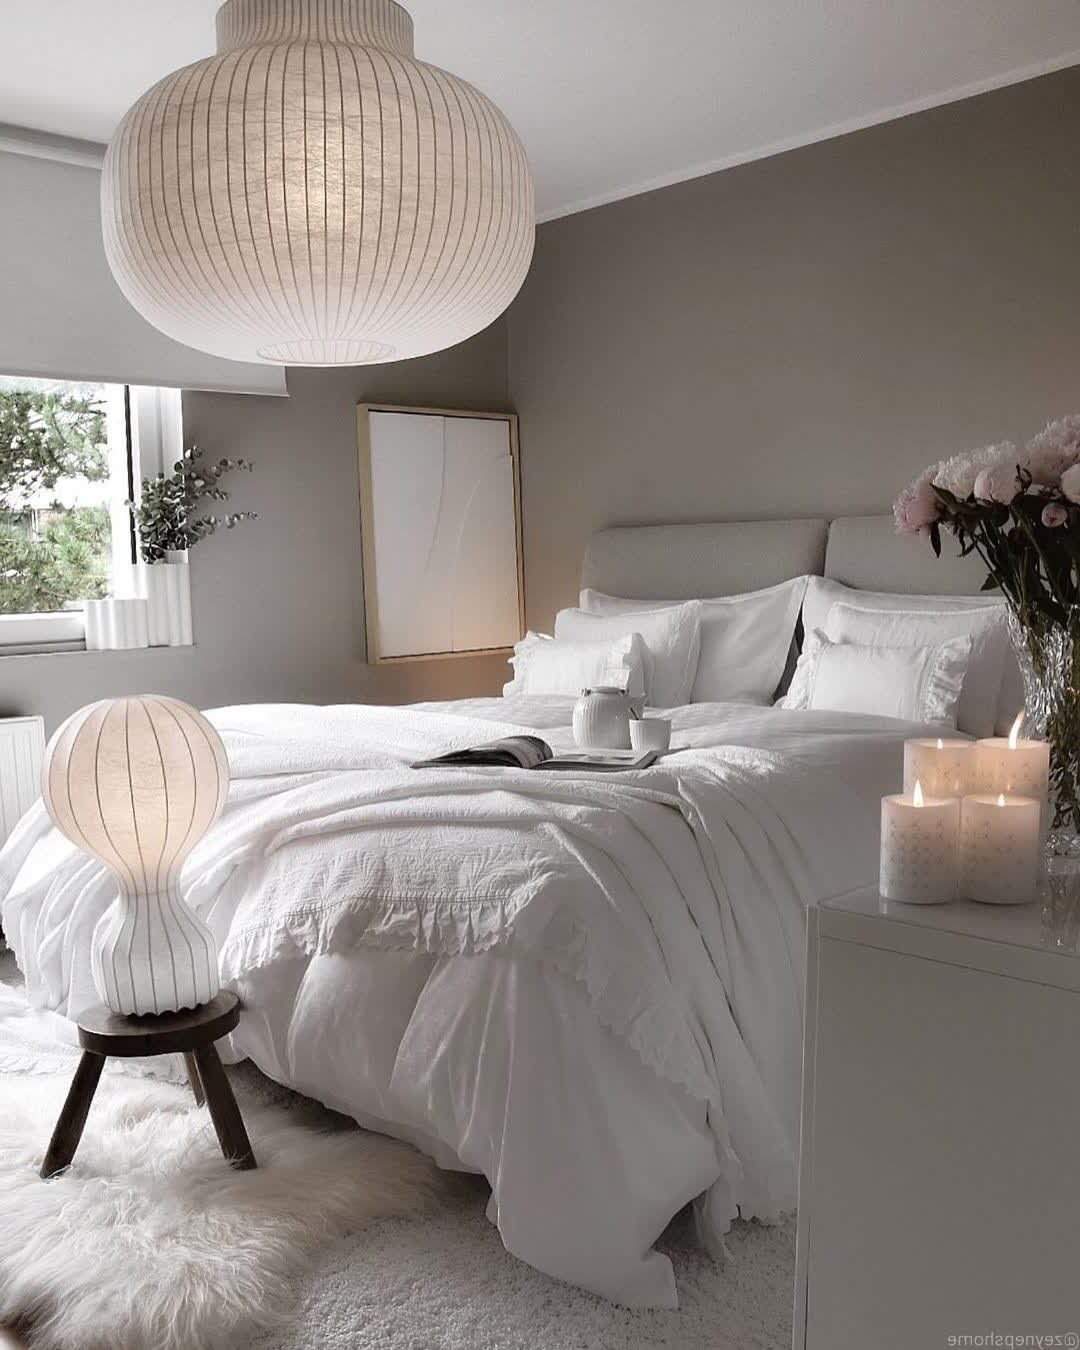 décoration intérieure gris claire beige lustre rond papier tapis fourrure lit double deco épurée minimaliste